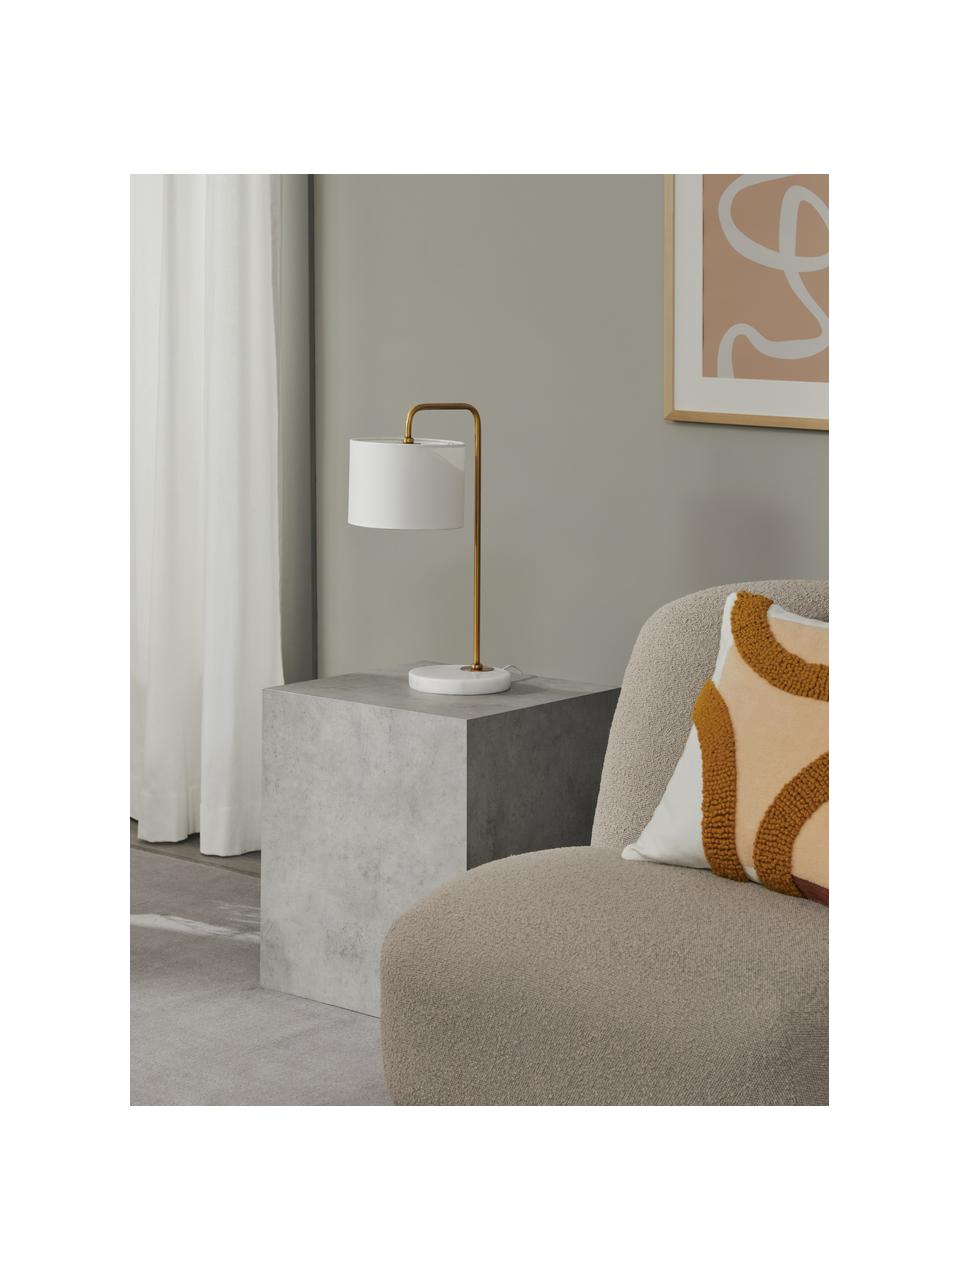 Lámpara de mesa de mármol Montreal, Pantalla: tela, Estructura: metal galvanizado, Cable: plástico, Blanco, dorado, An 32 x Al 49 cm